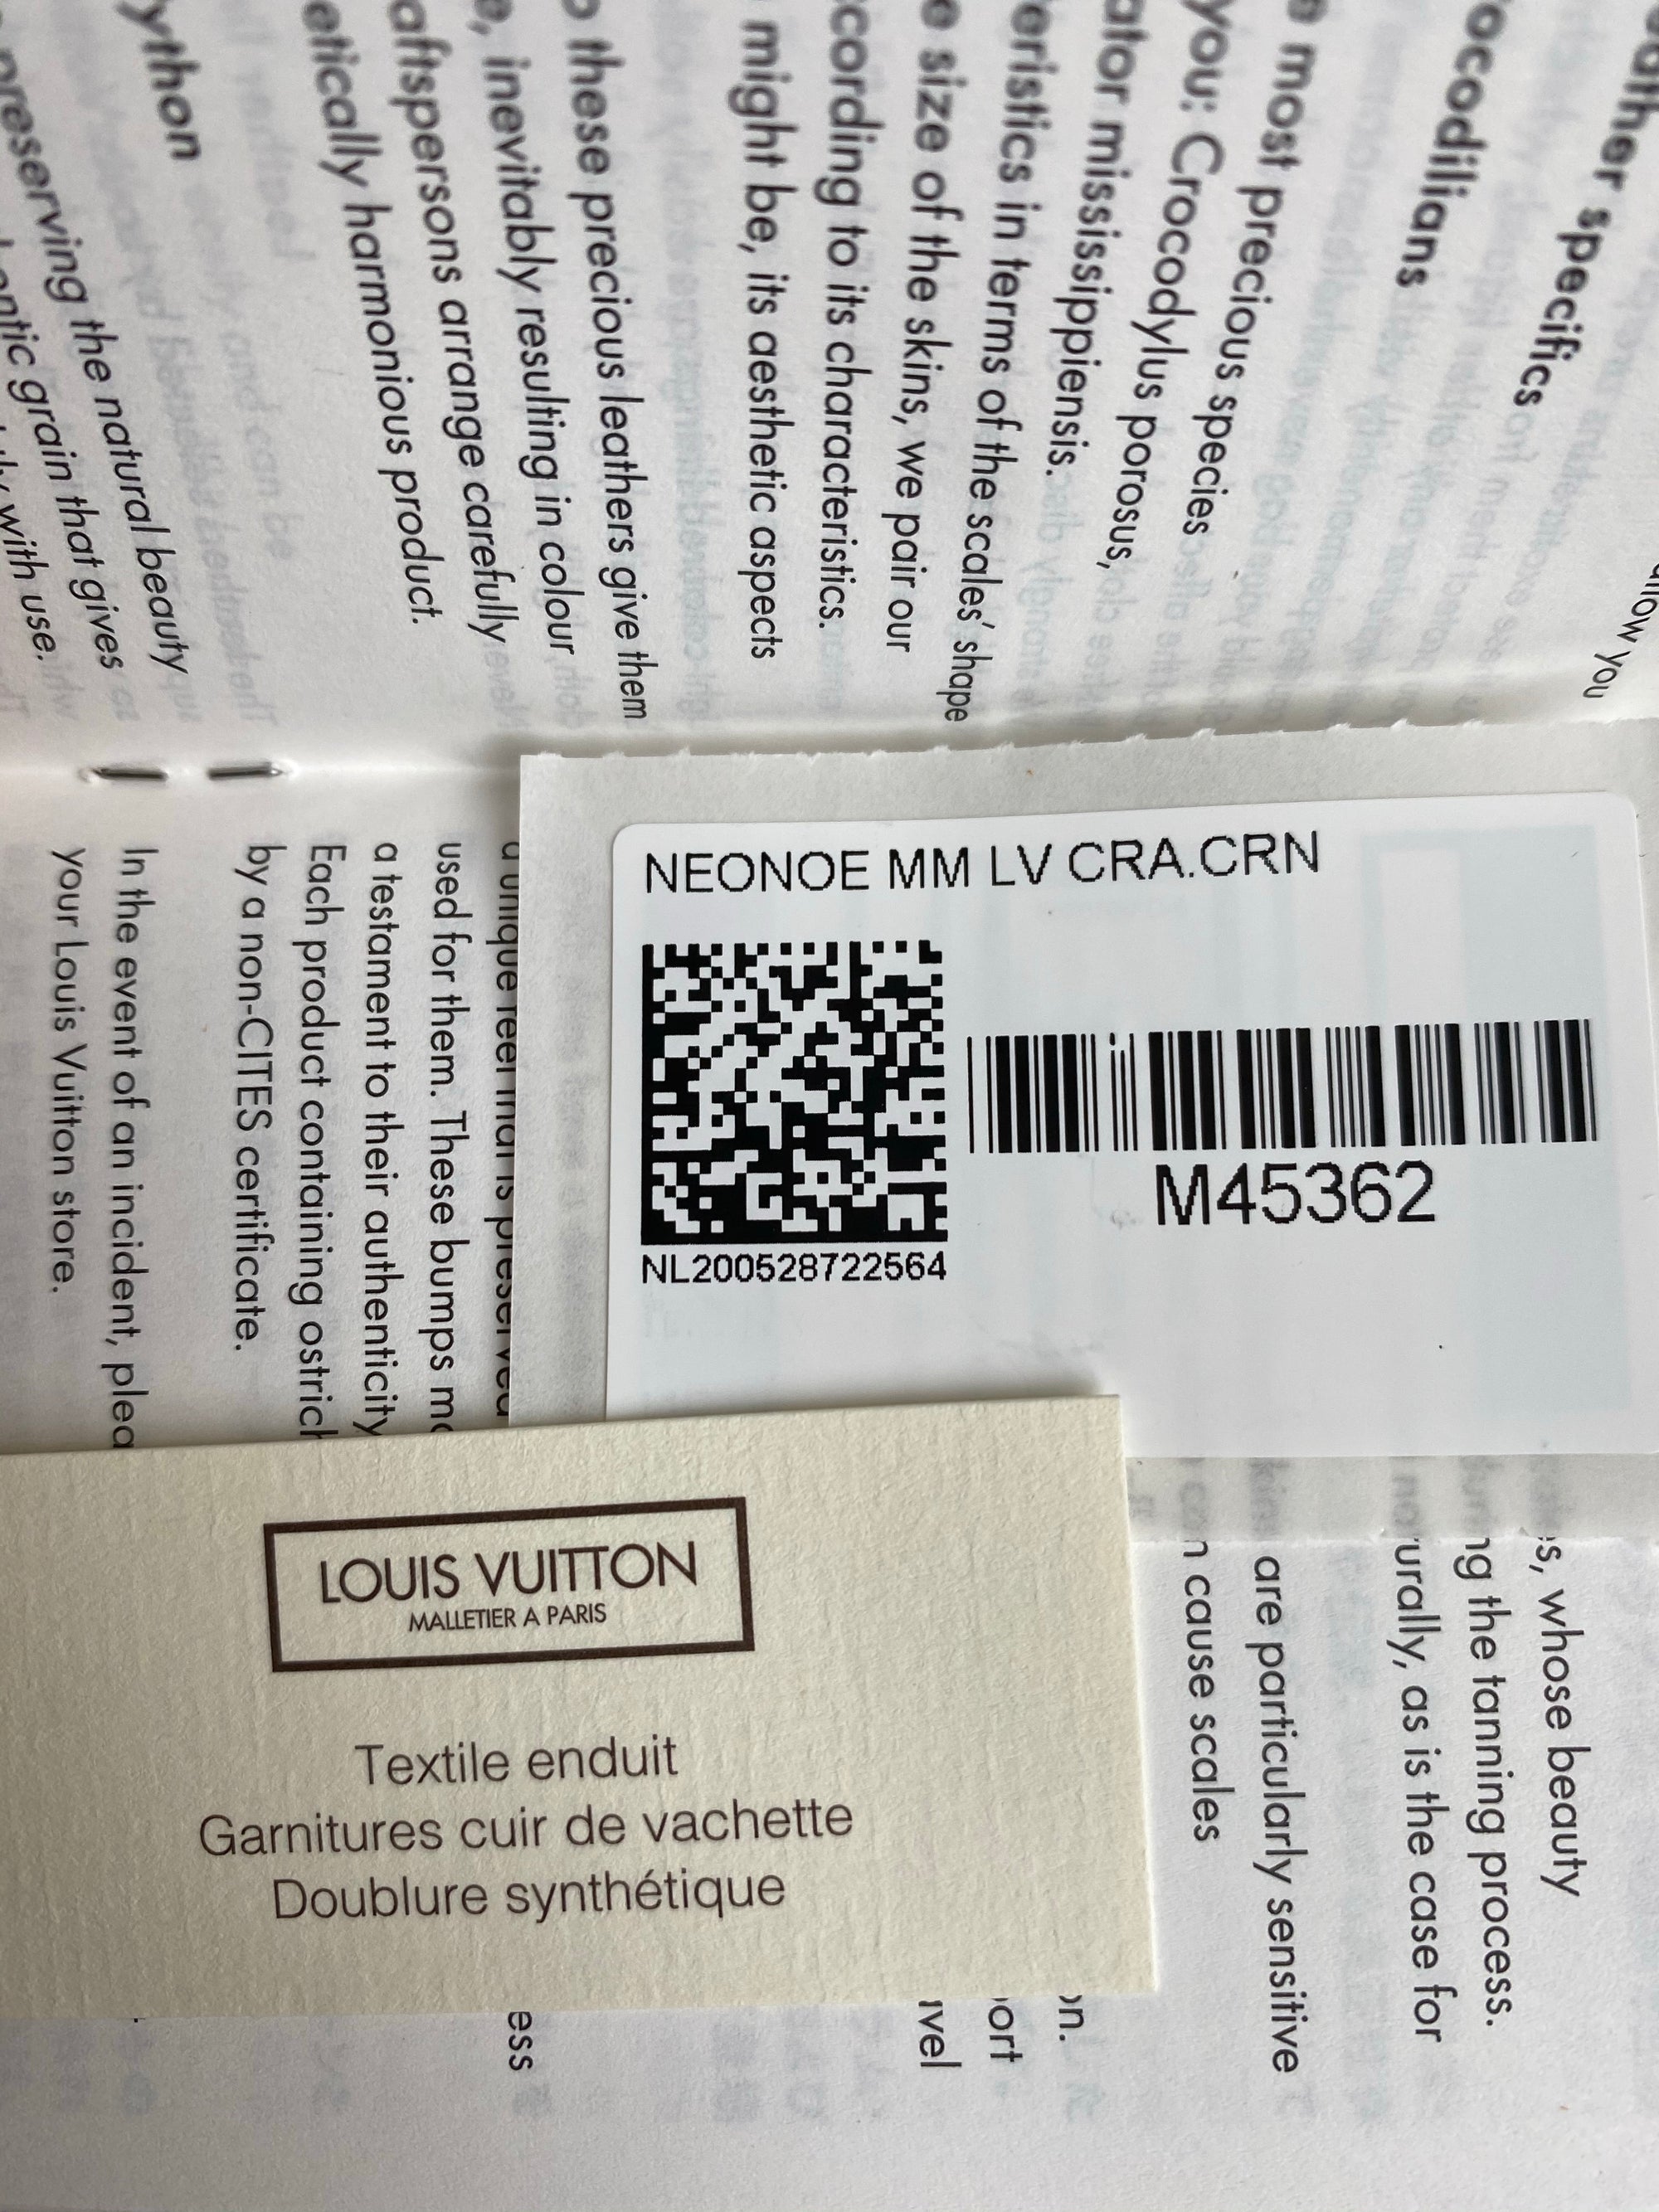 Louis Vuitton receipt Paris